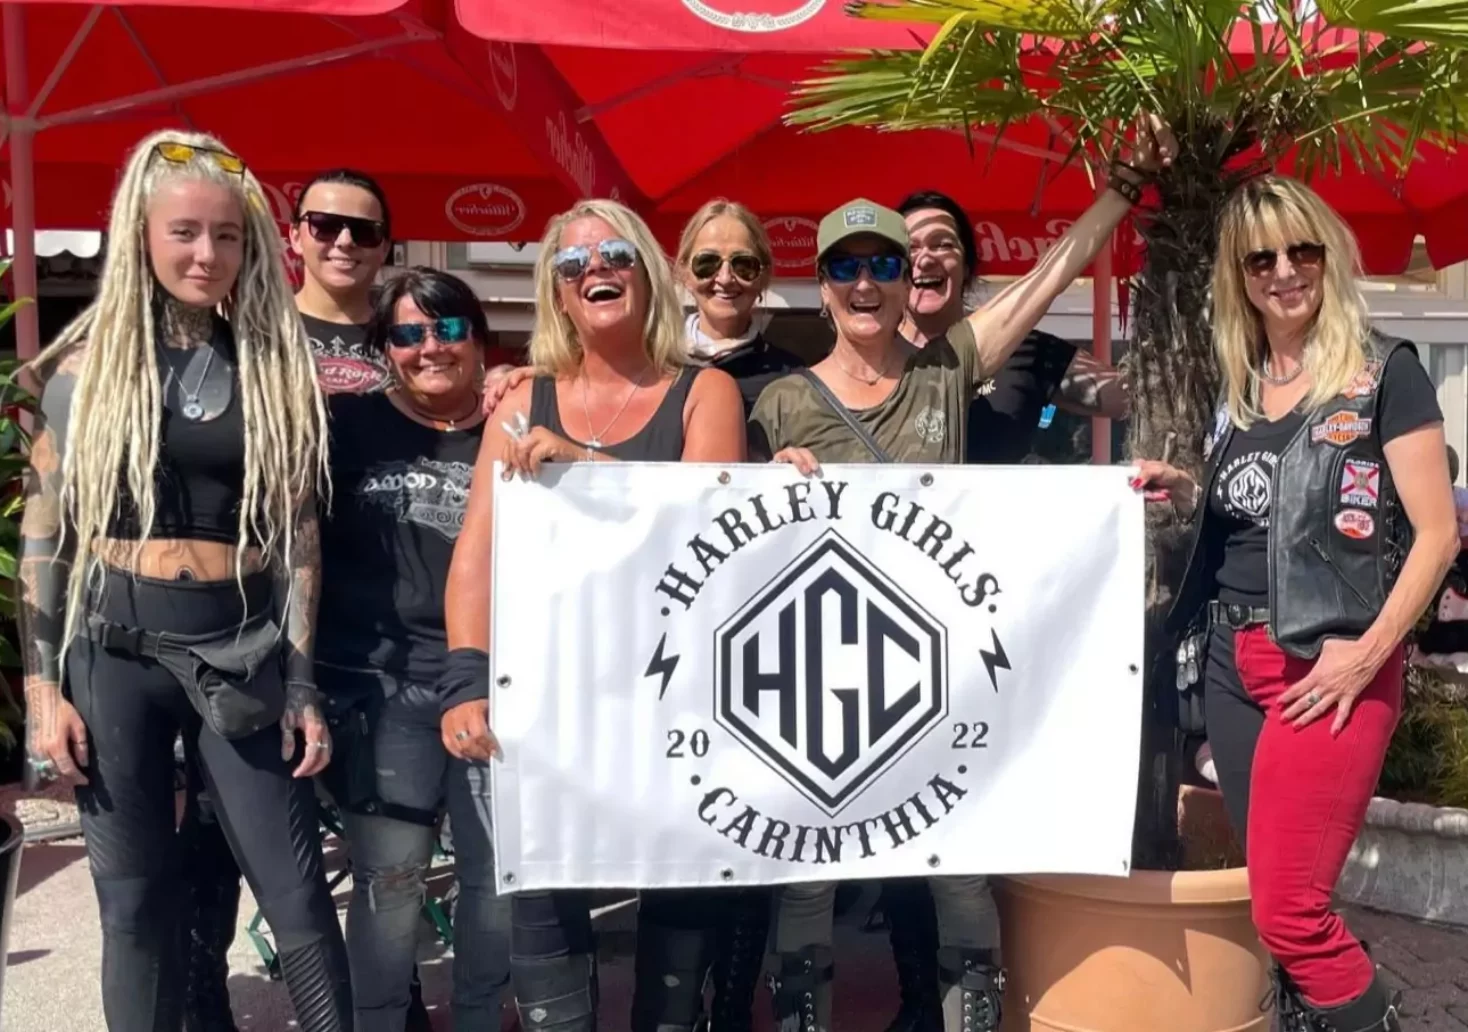 Ein Bild auf 5min.at zeigt die Mitglieder der Harley-Girls-Carinthia.